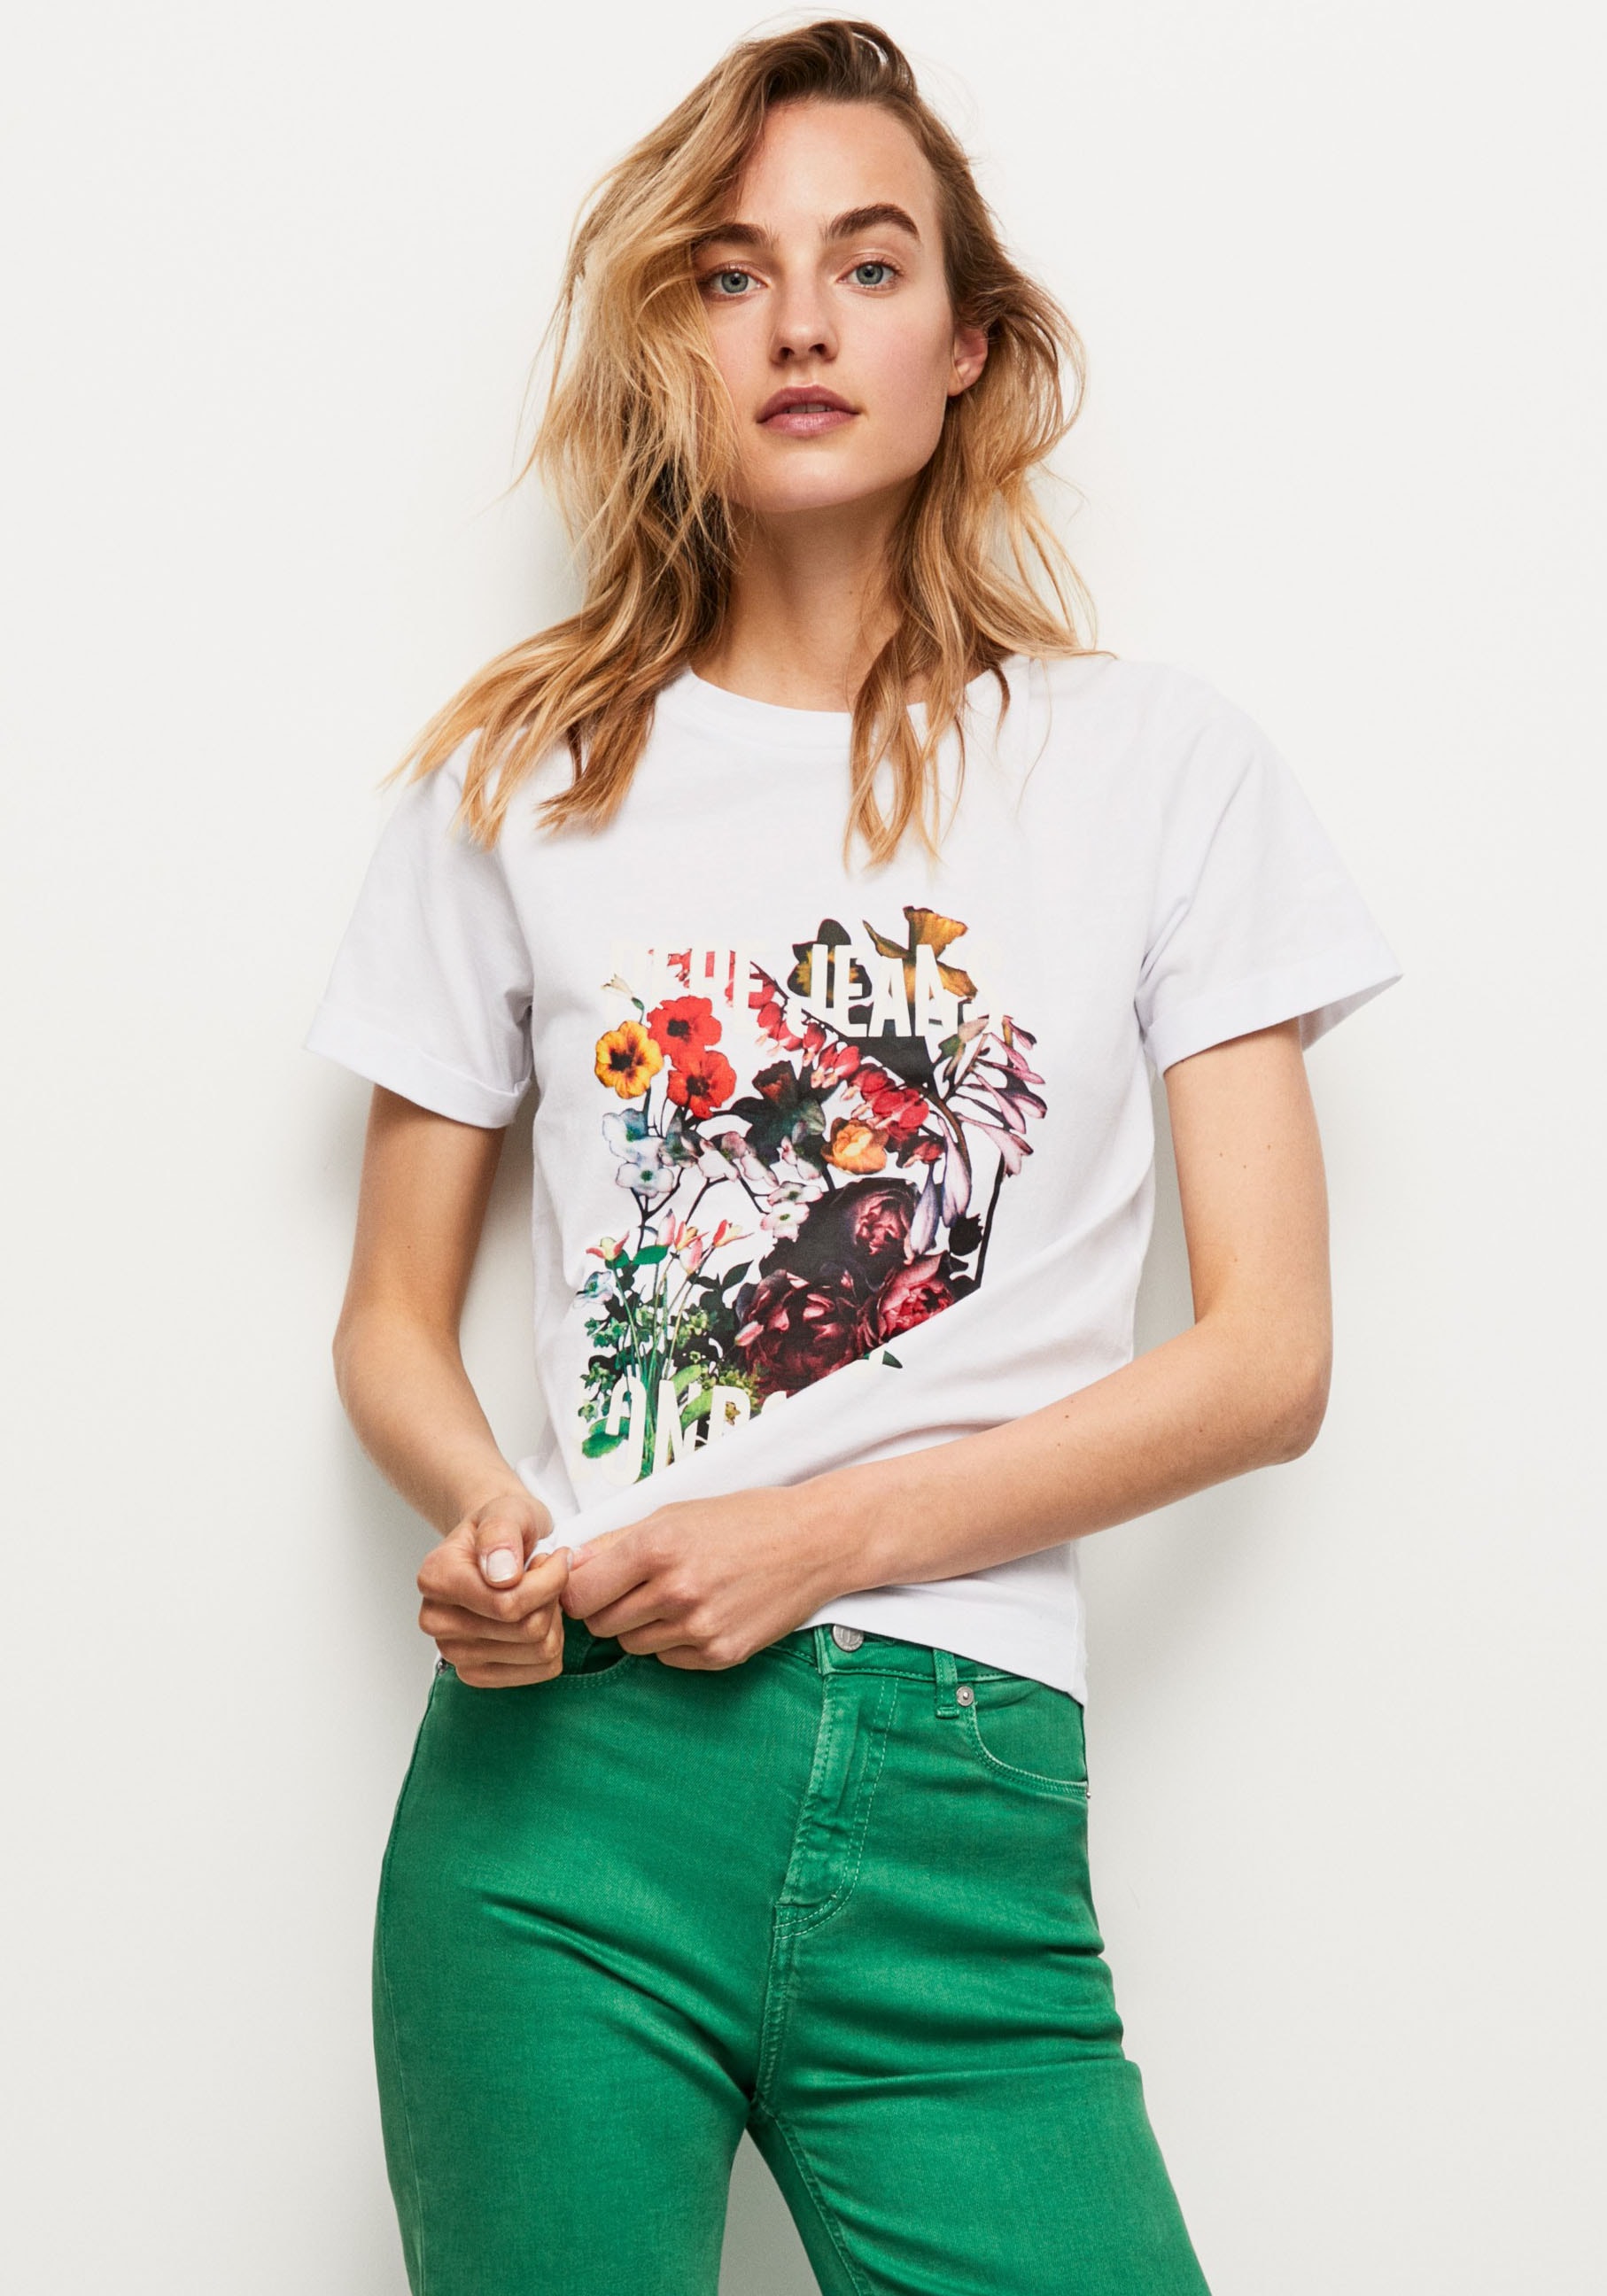 Jelmoli-Versand Schweiz mit Pepe tollem und in markentypischem bei Passform Frontprint T-Shirt, online bestellen Jeans oversized